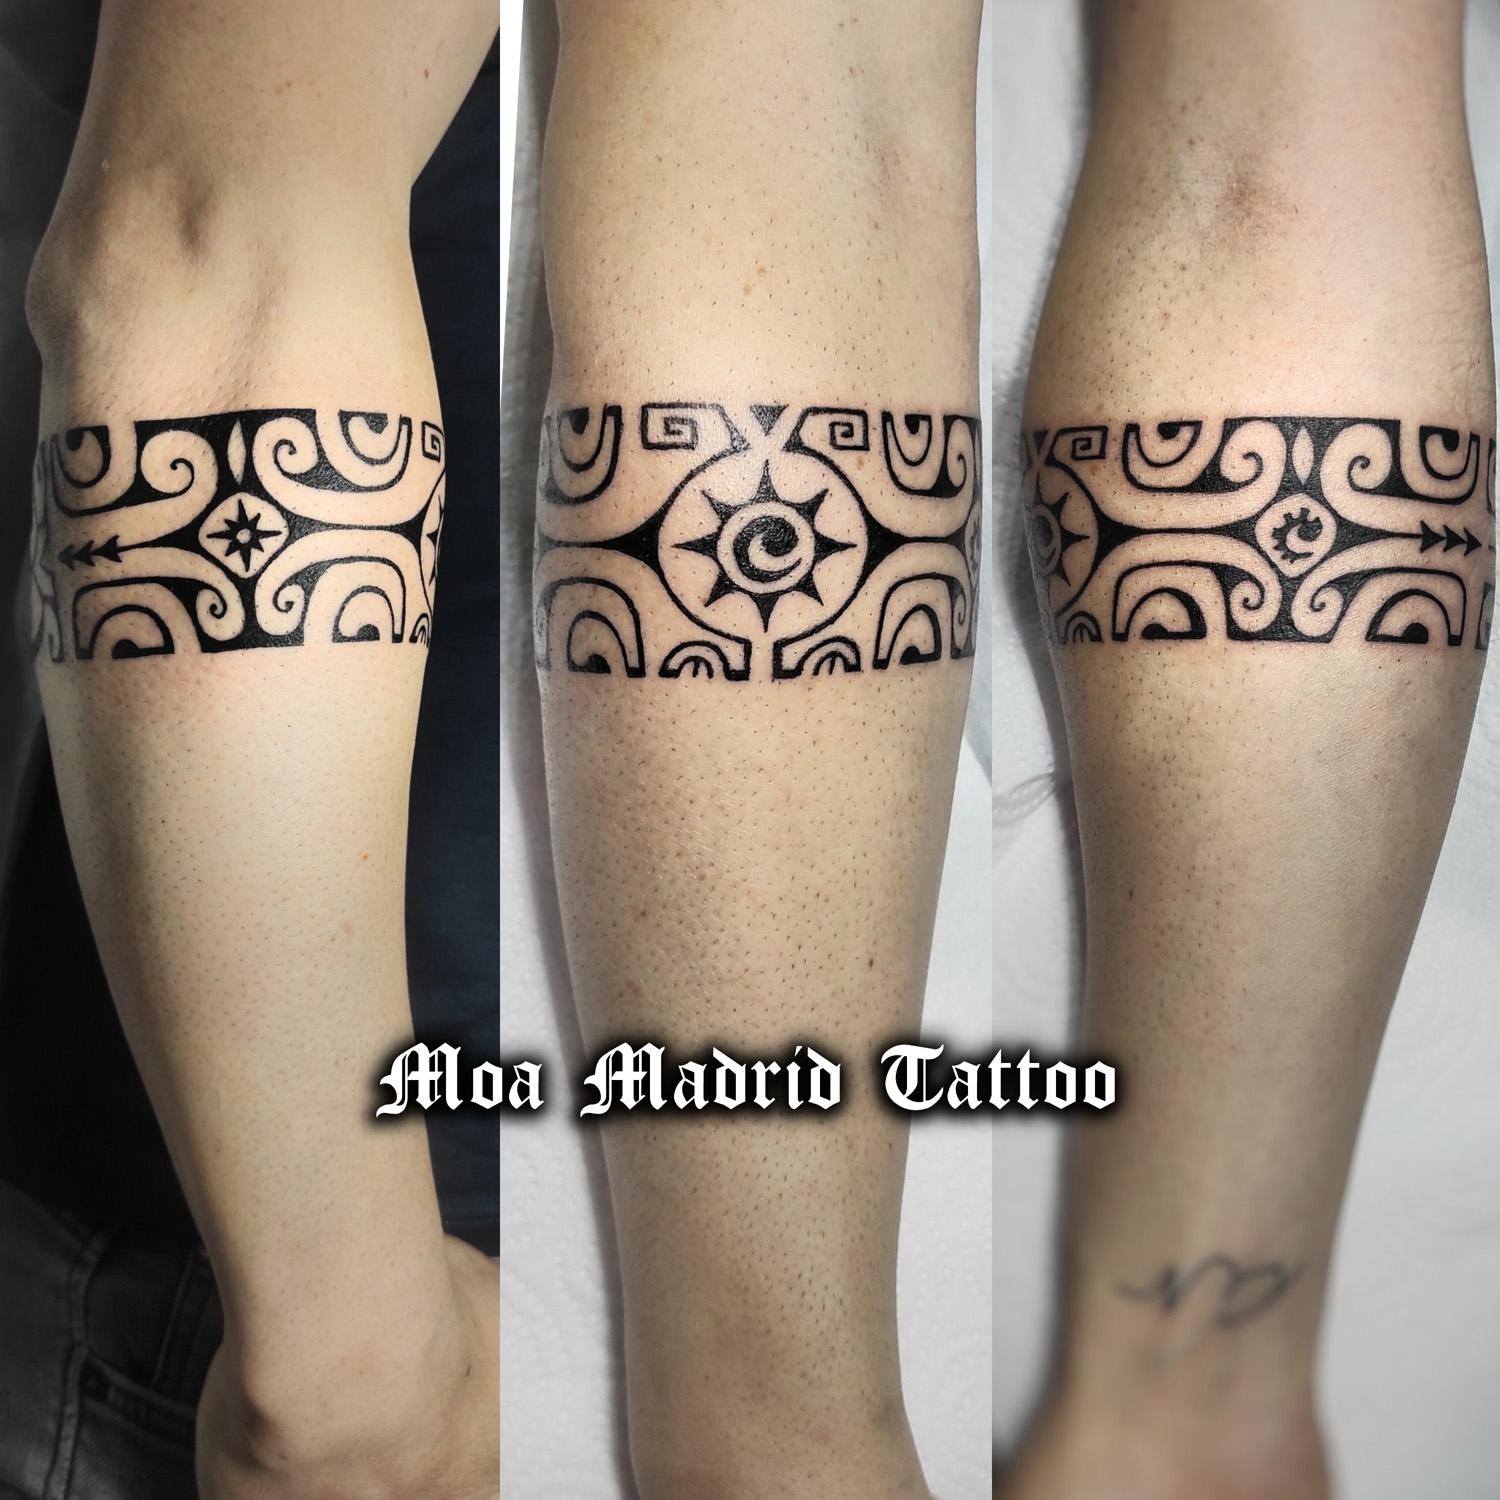 Tatuaje de brazalete polinesio cuyos símbolos y significados hablan sobre su vida